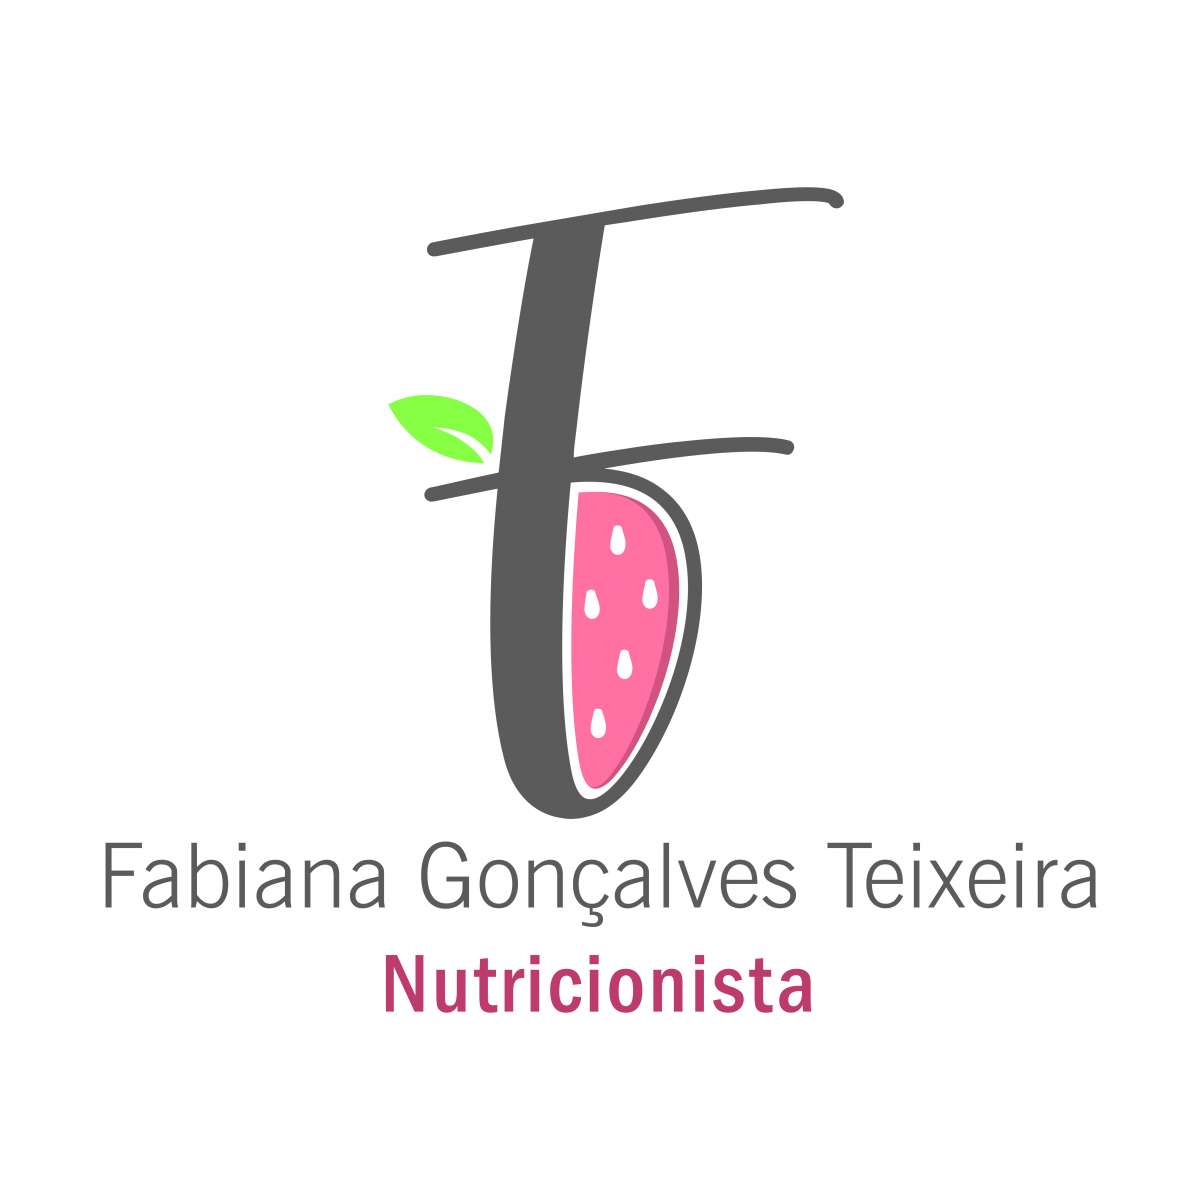 Fabiana Gonçalves Teixeira - Santa Maria da Feira - Nutricionista